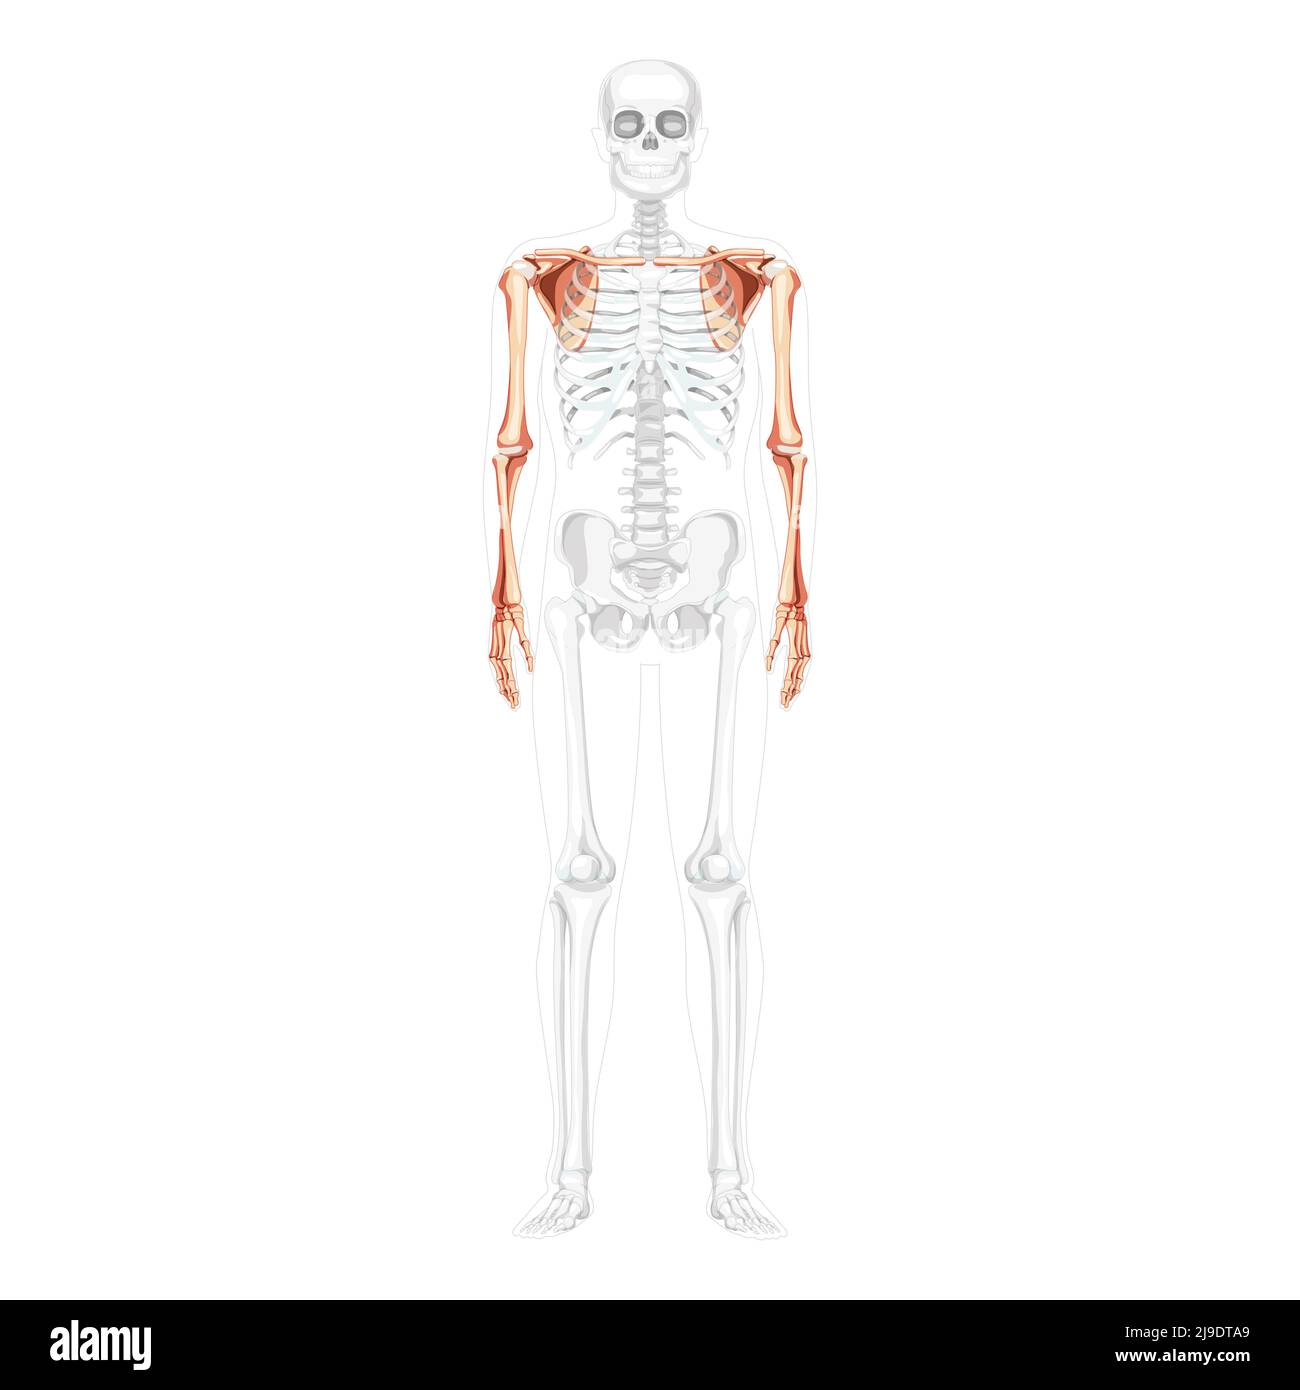 Skelett obere Extremitäten Arme mit Schultergurt menschliche Vorderansicht mit teilweise transparenter Knochenposition. Anatomisch korrekte Hände, Schulterblatt, Unterarme realistisch flach Vektordarstellung isoliert Stock Vektor